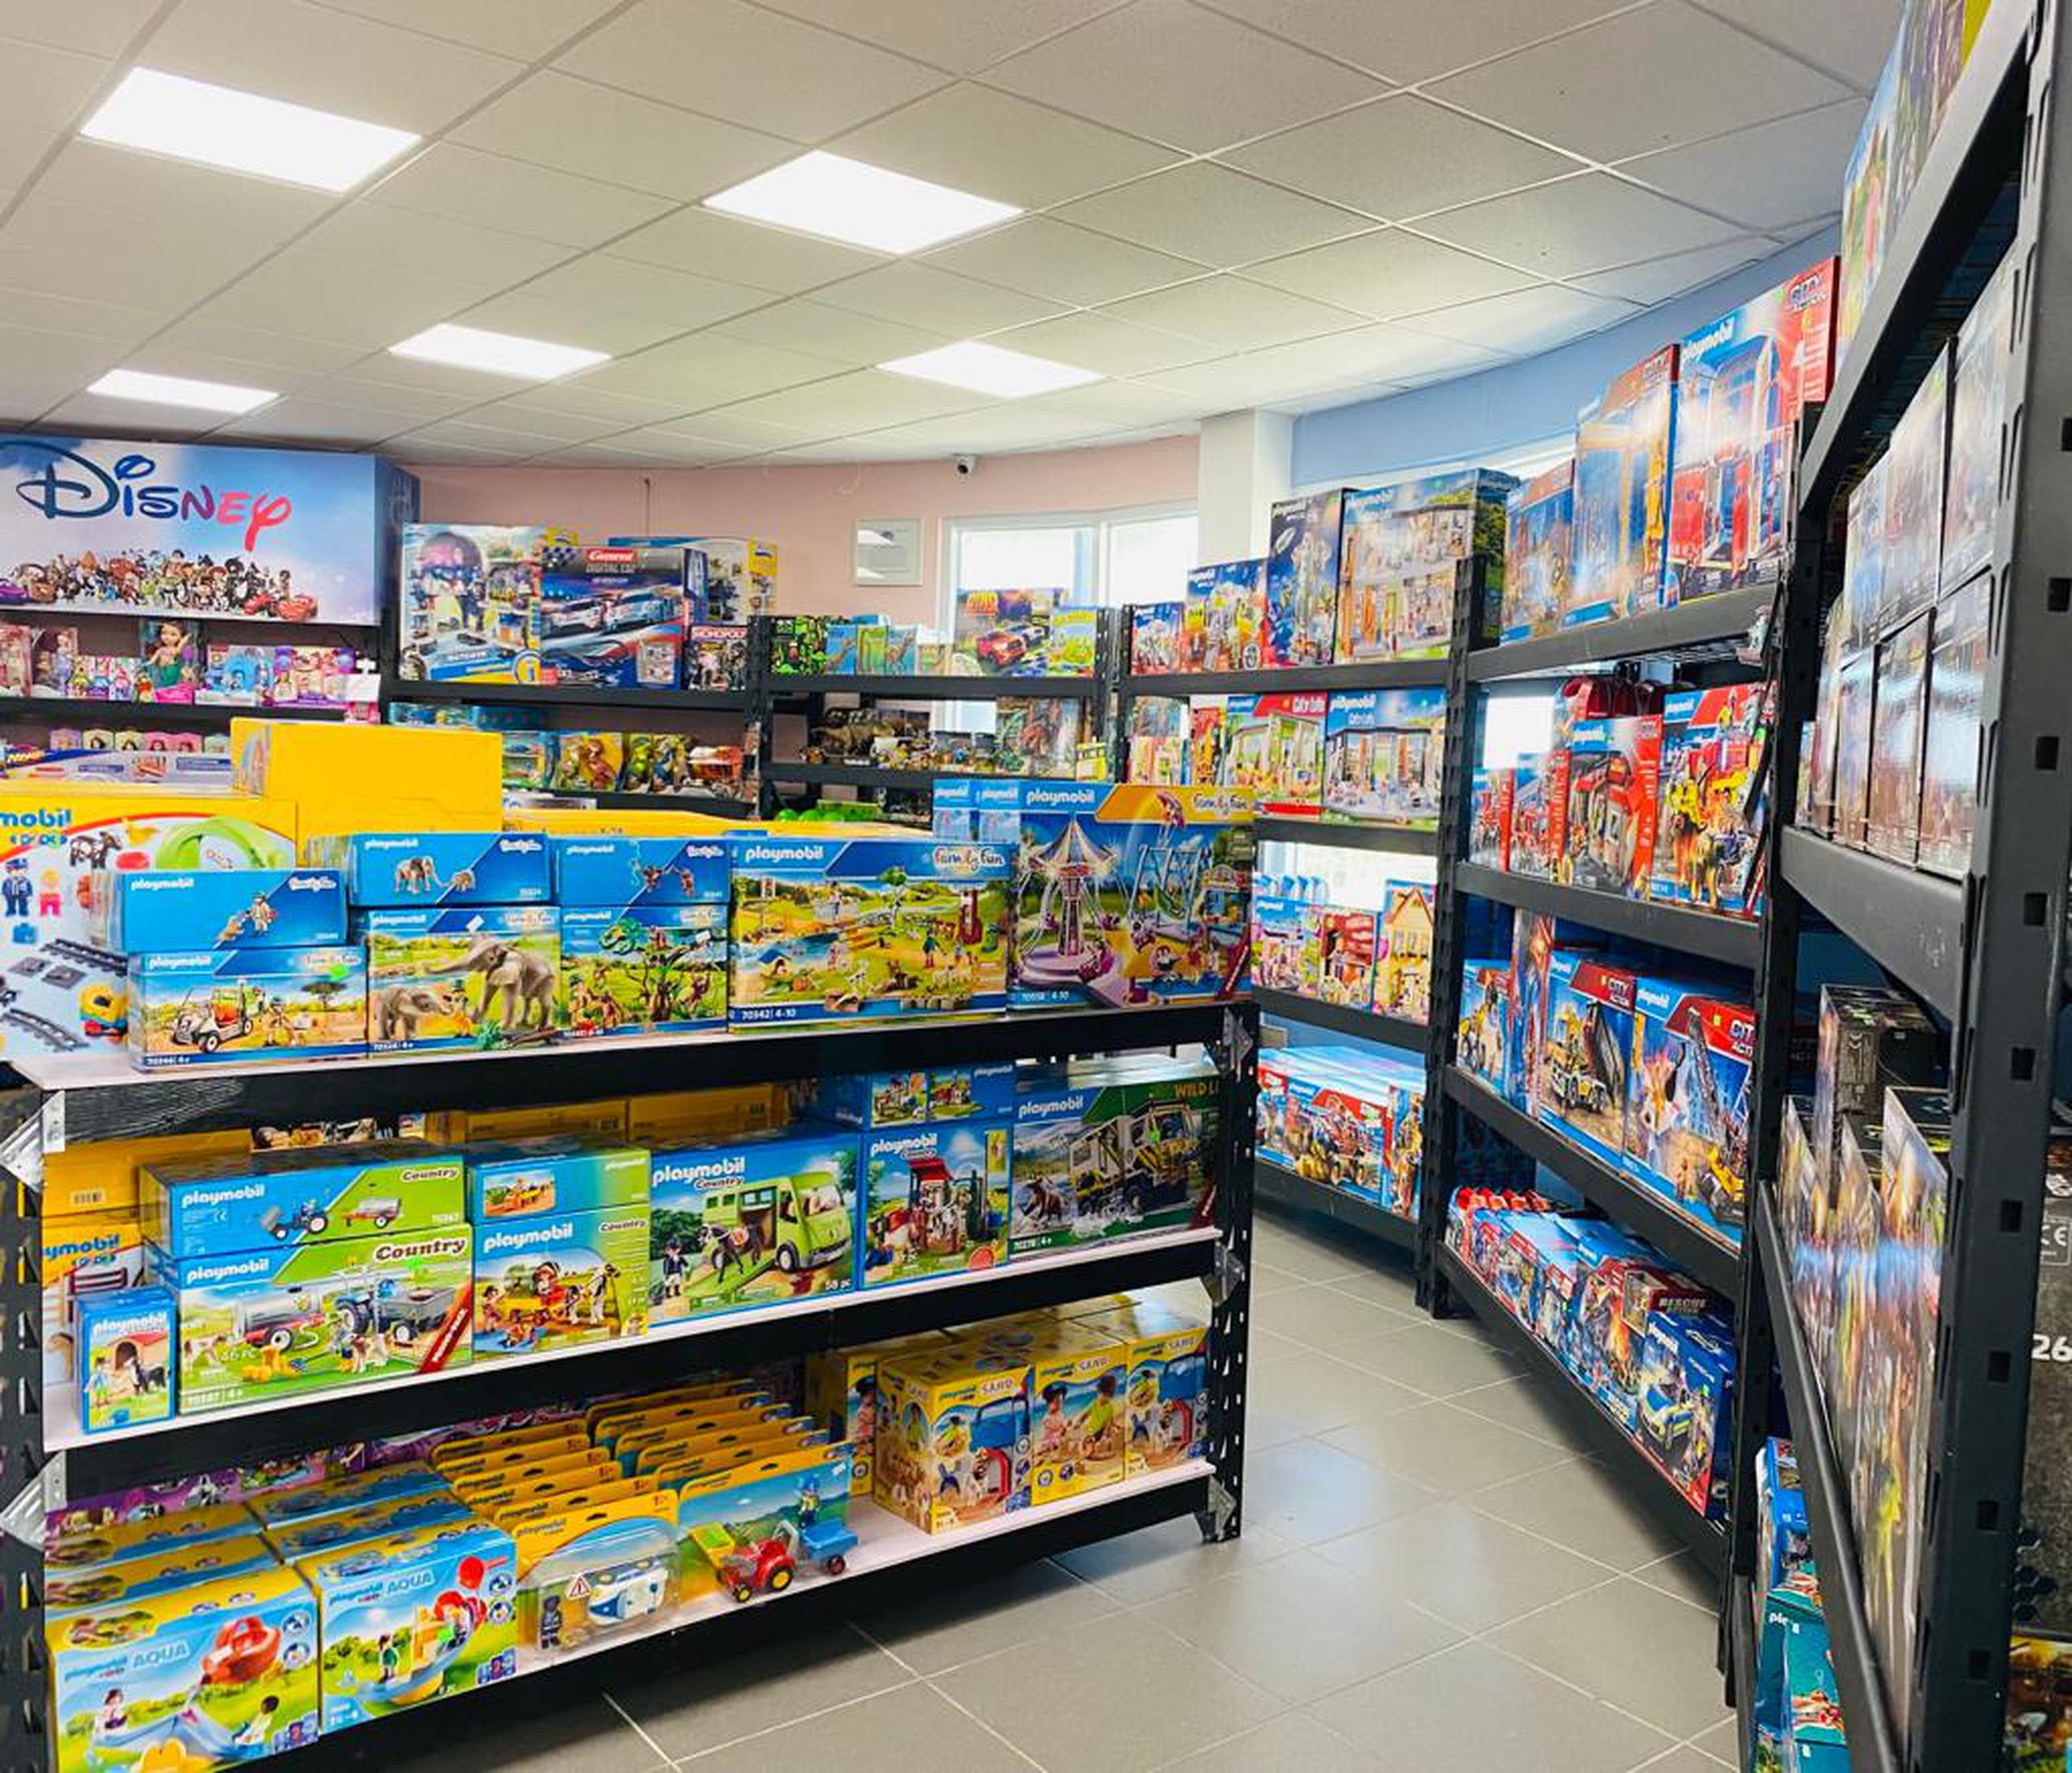 Propietarias de jugueterías locales han señalado que, aún estando preparadas para las ventas de Navidad, diversas productoras están notificando retrasos de hasta un mes y medio en el envío de nueva mercancia.